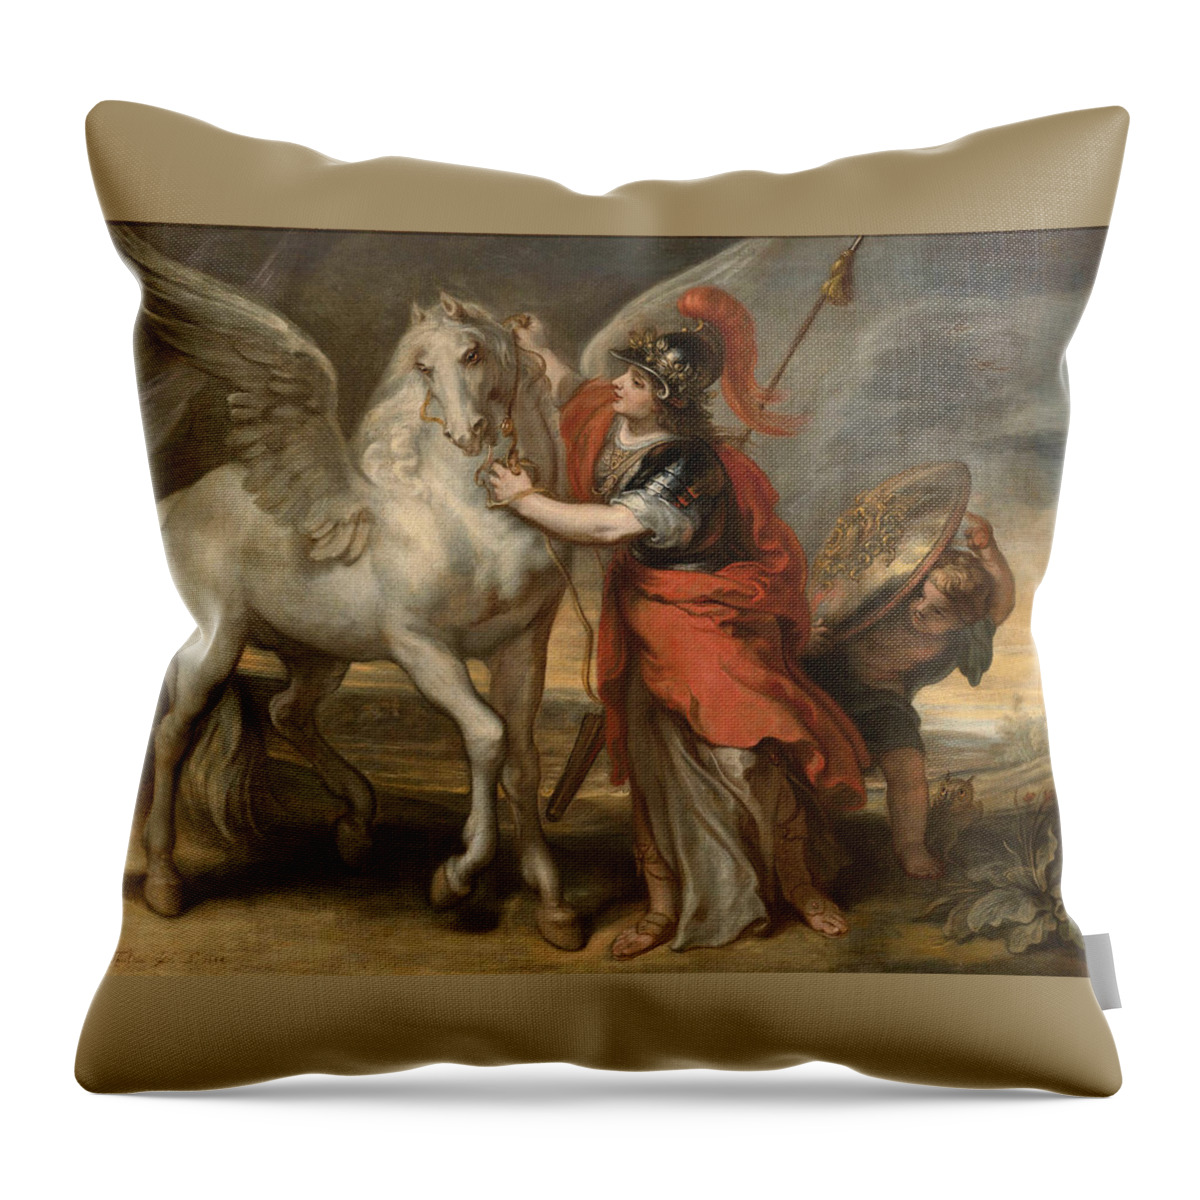 Theodoor Van Thulden Throw Pillow featuring the painting Athena and Pegasus by Theodoor van Thulden